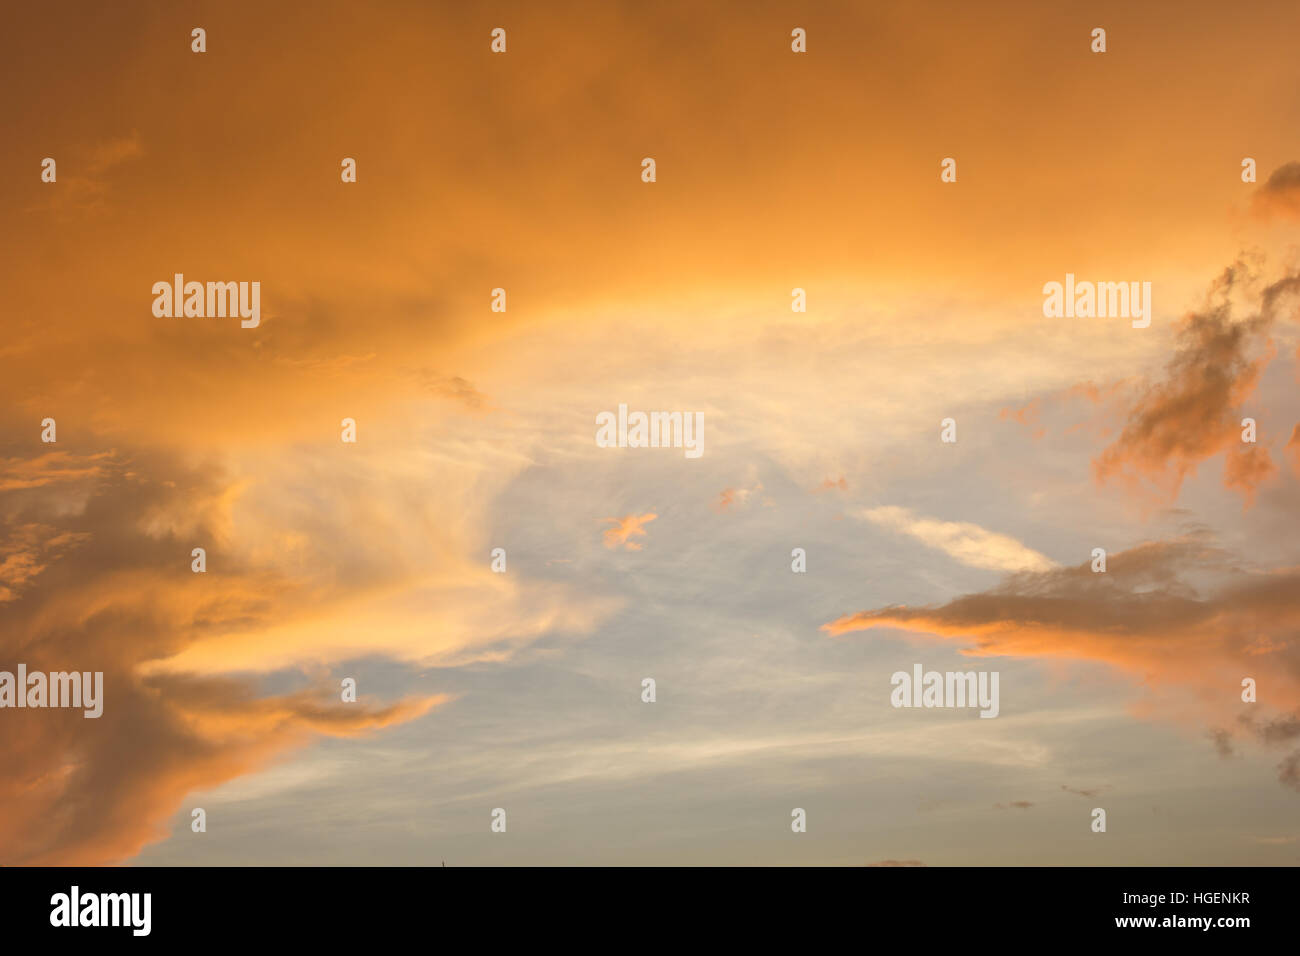 Abstract orange sky. immagine del fuoco rosso arancione tramonto Cielo Foto Stock